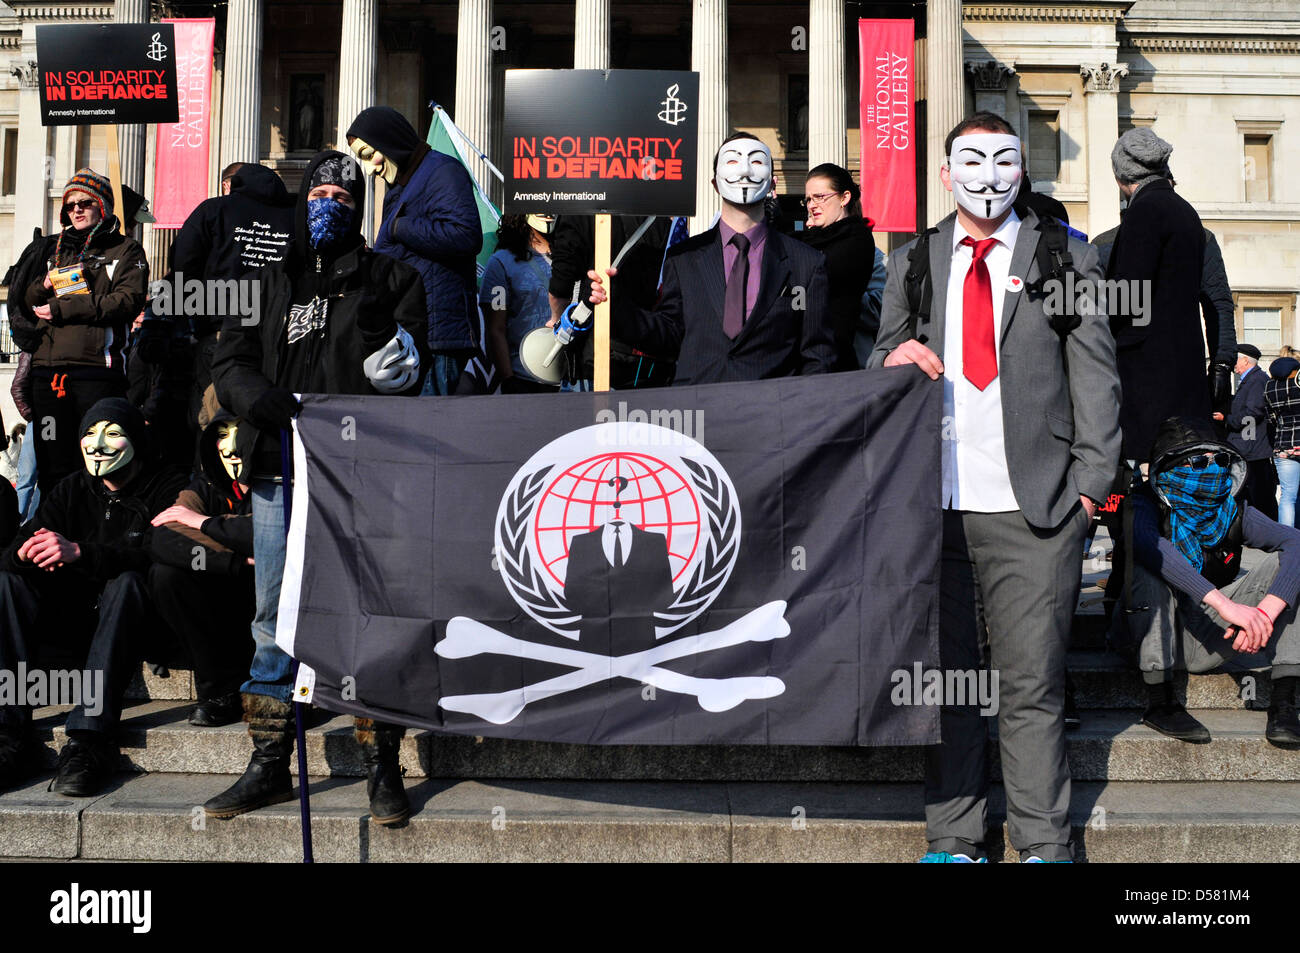 Un groupe de manifestants, certains d'entre eux portant des masques anonyme lors d'un rassemblement à Trafalgar Square, Londres, Royaume-Uni. Banque D'Images